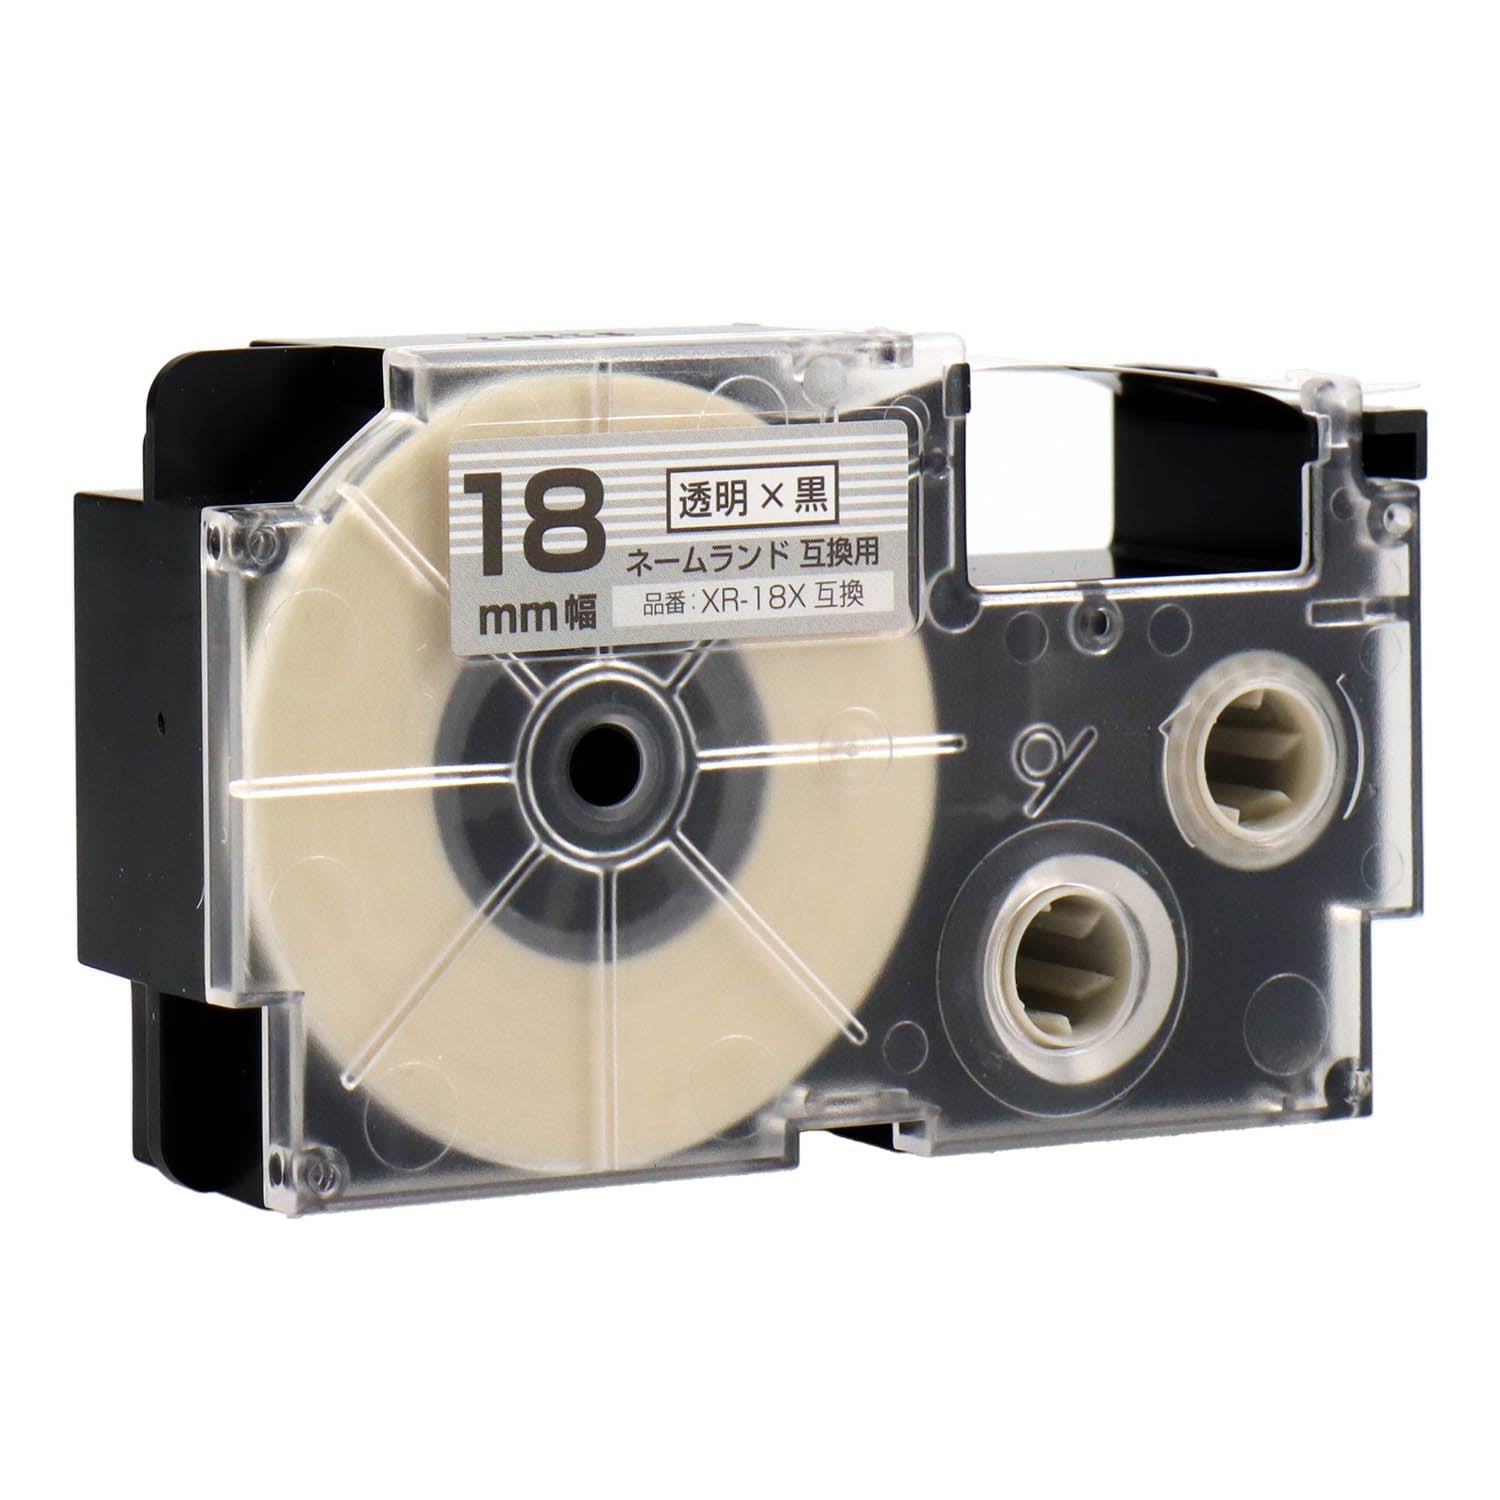 ネームランド用互換テープカートリッジ 透明×黒文字 18mm